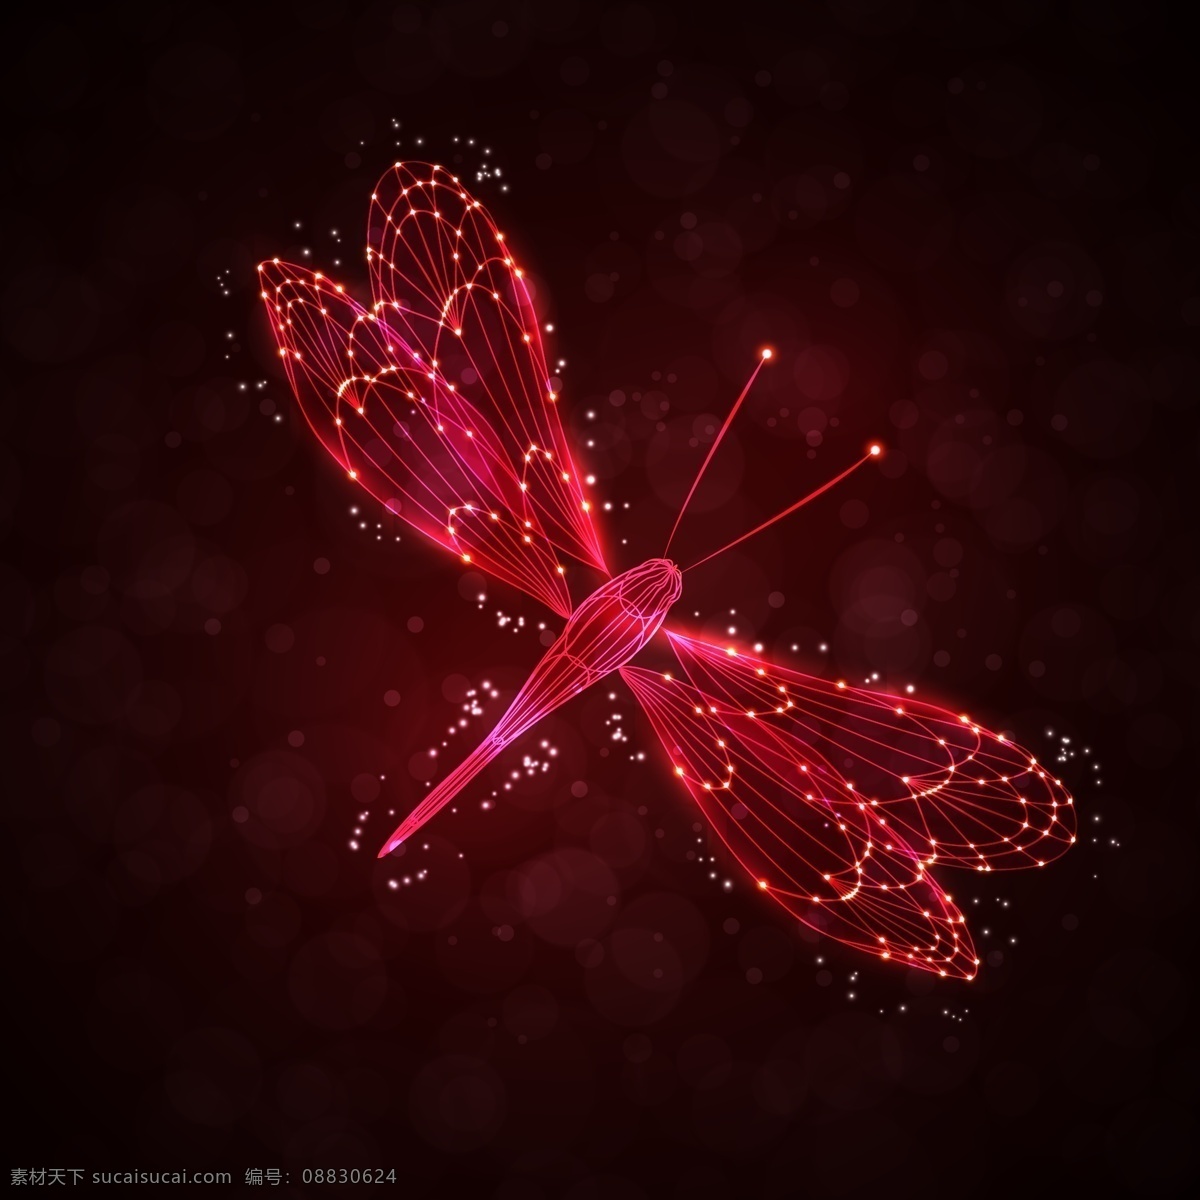 璀璨 昆虫 矢量 设计素材 创意设计 动物世界 模板 设计稿 源文件 闪亮光晕 红色蜻蜓 璀璨昆虫 矢量图